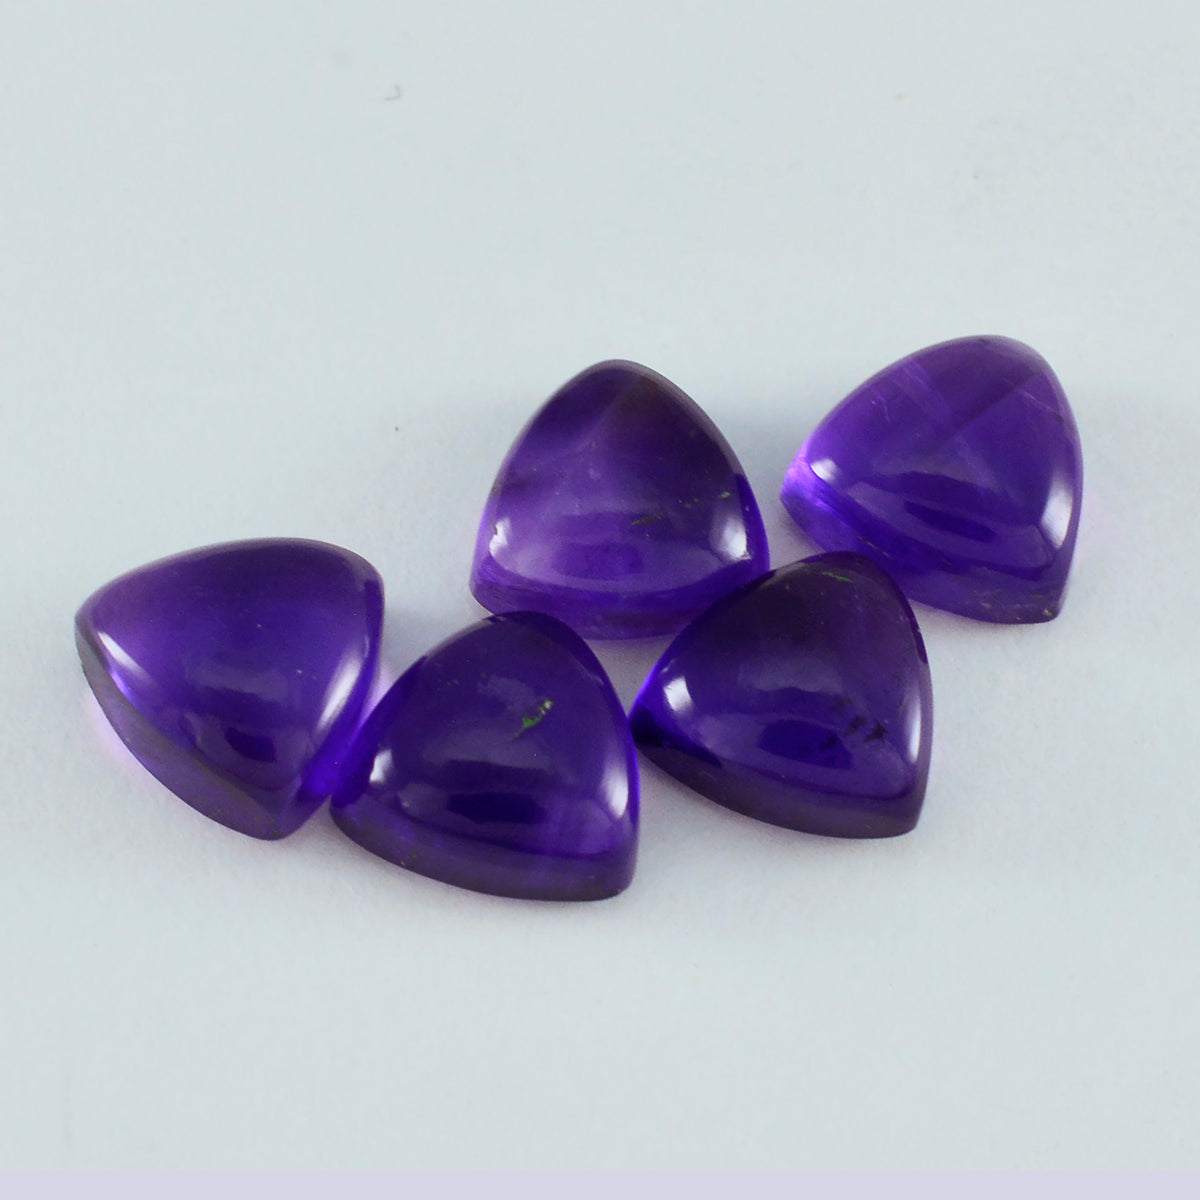 riyogems 1шт фиолетовый аметист кабошон 10x10 мм форма триллион драгоценных камней превосходного качества